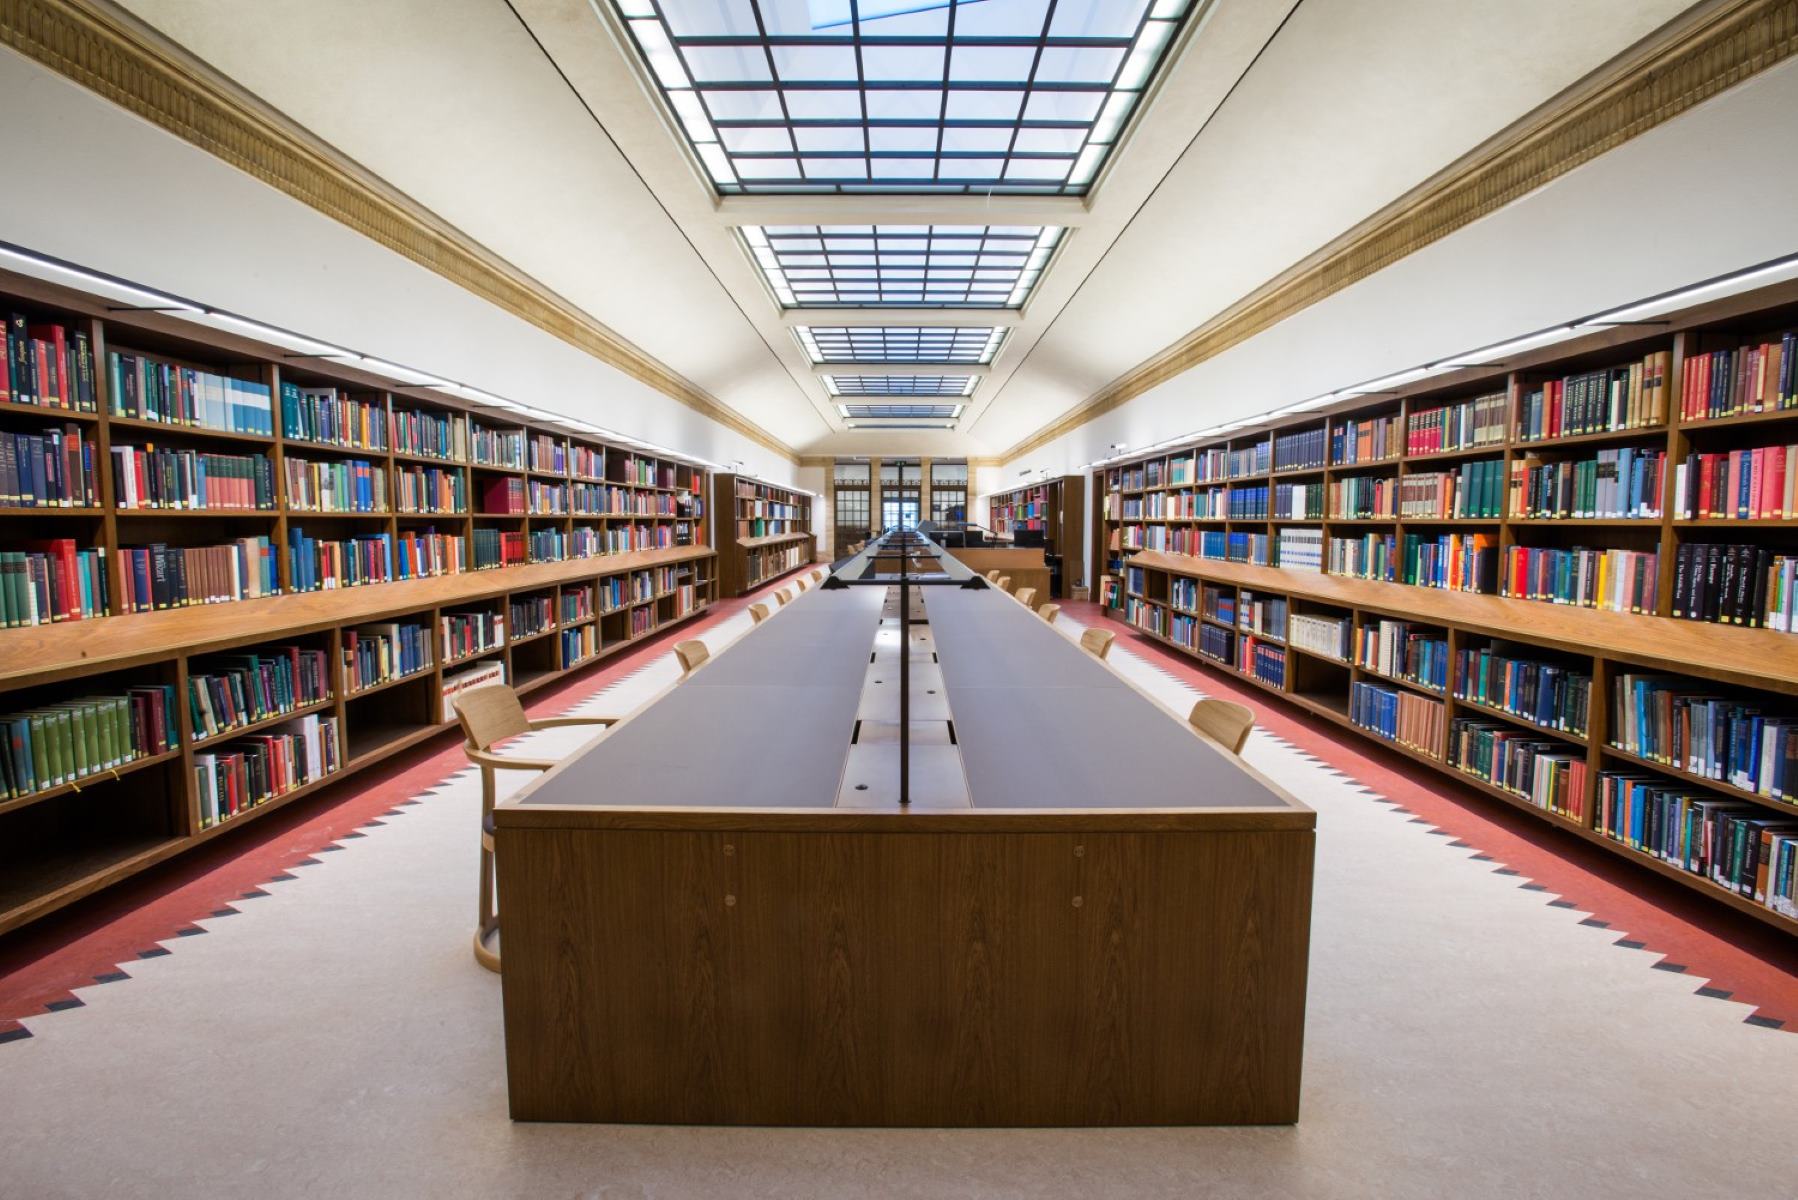 Effects library. Оксфордский университет библиотека. Йельский университет библиотека. Красивая библиотека. Красивые читальные залы.